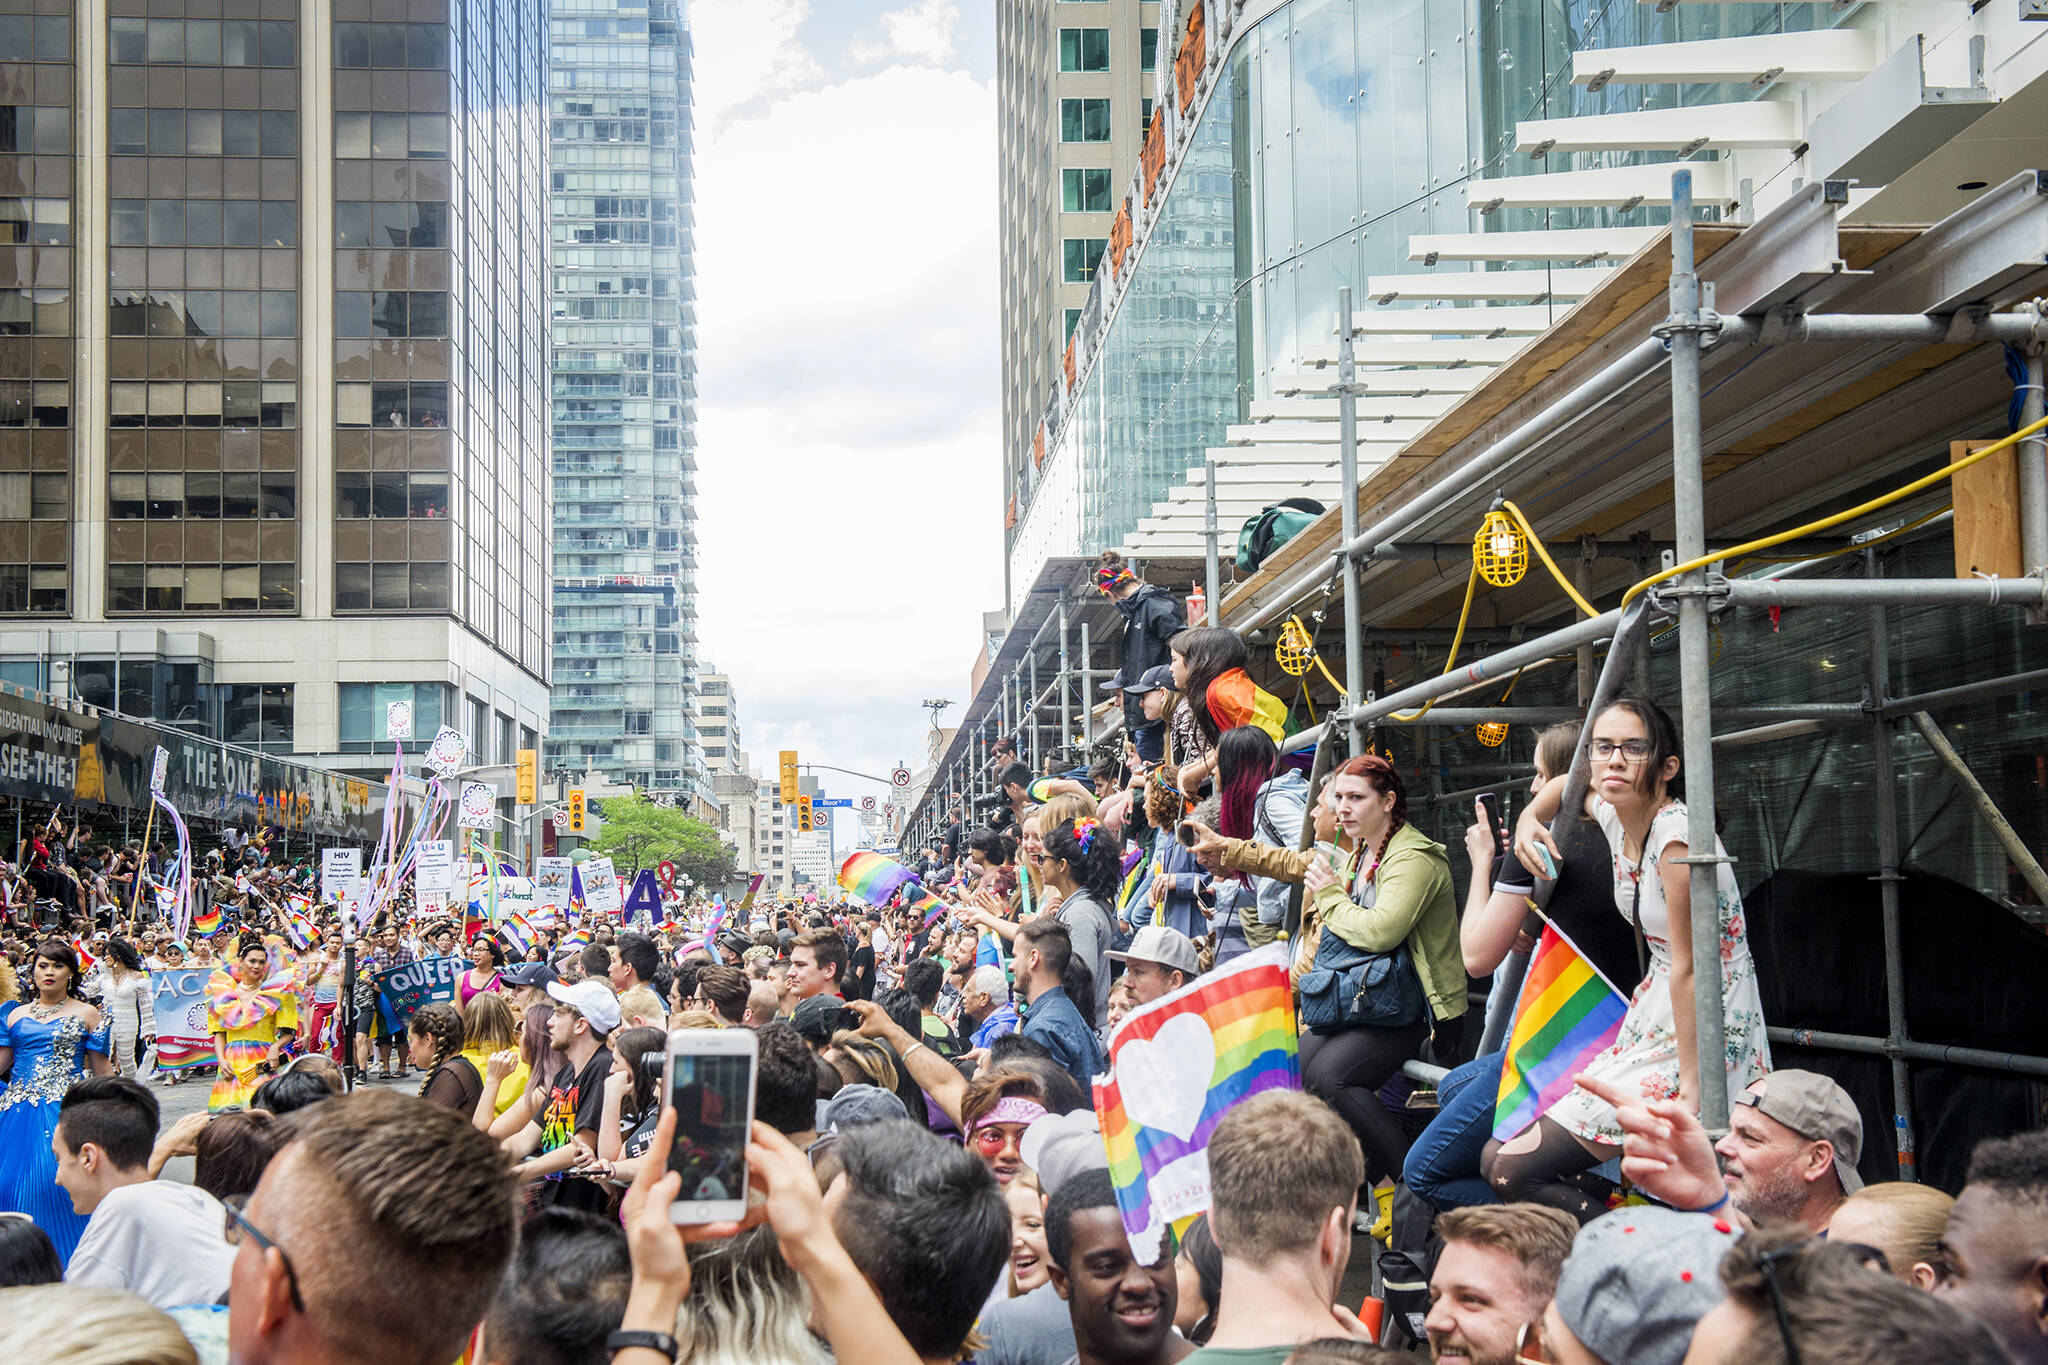 Pride Toronto lost 1.3 million last year amid controversy